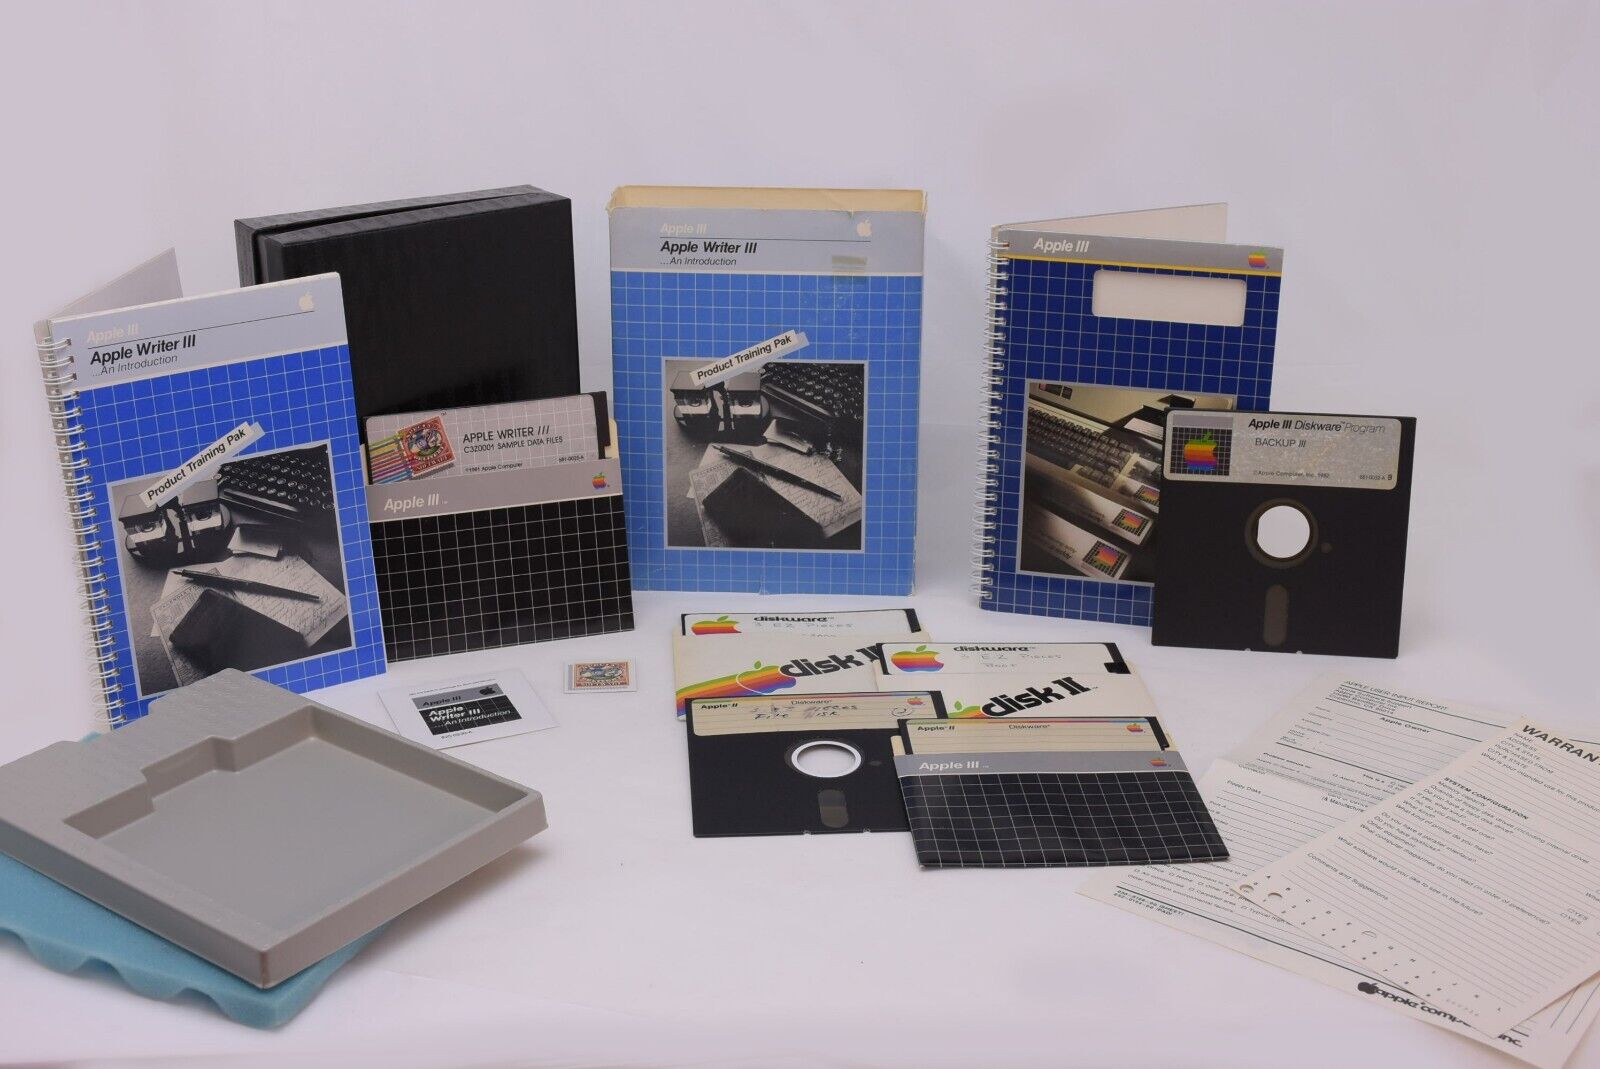 Apple III Apple Writer III + Apple III Backup III User Manual & Box 5.25\